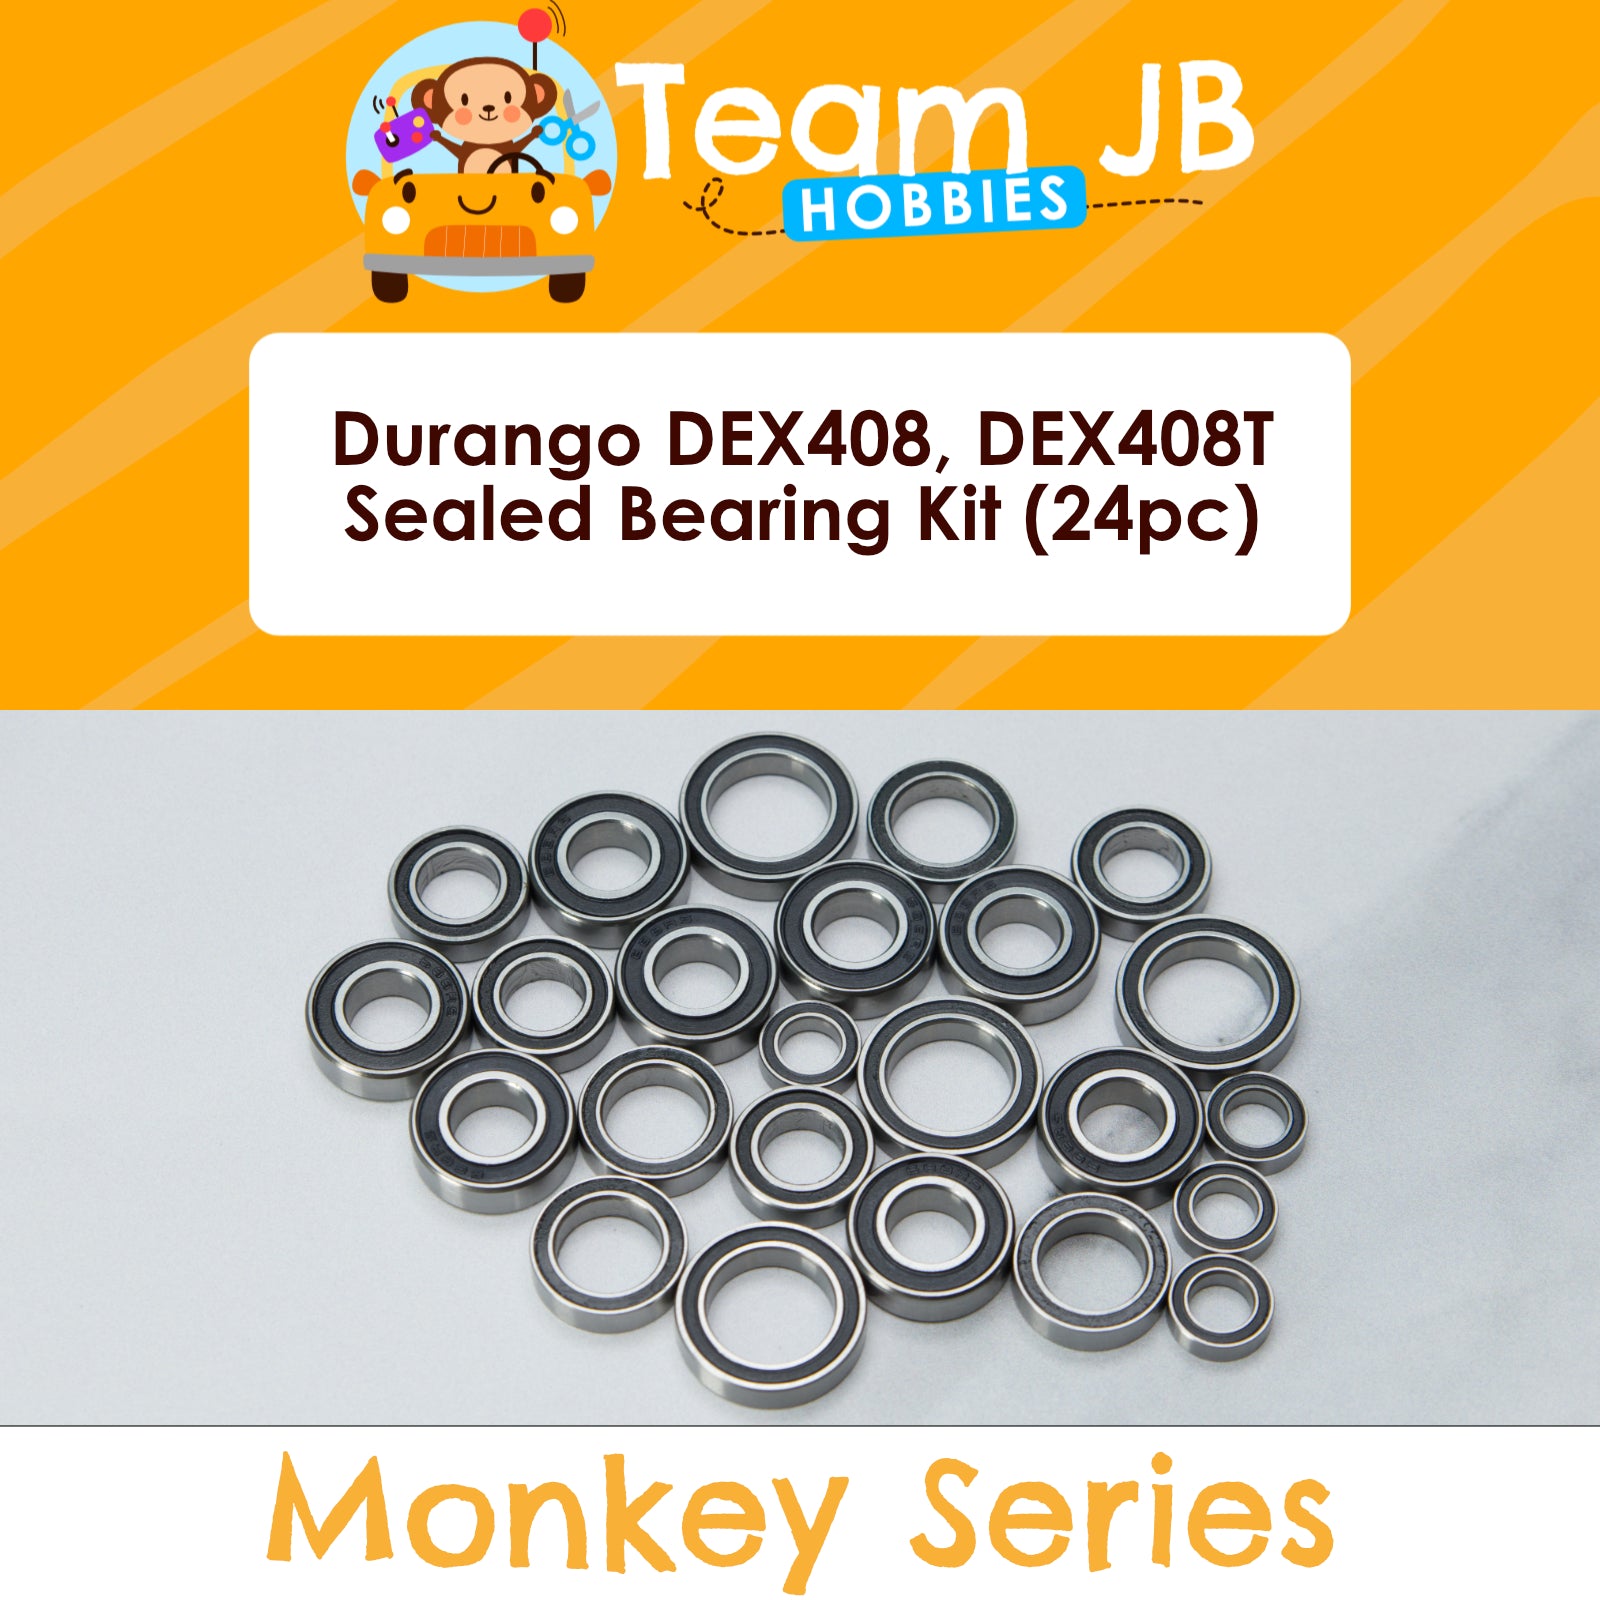 Durango DEX408, DEX408T - Sealed Bearing Kit